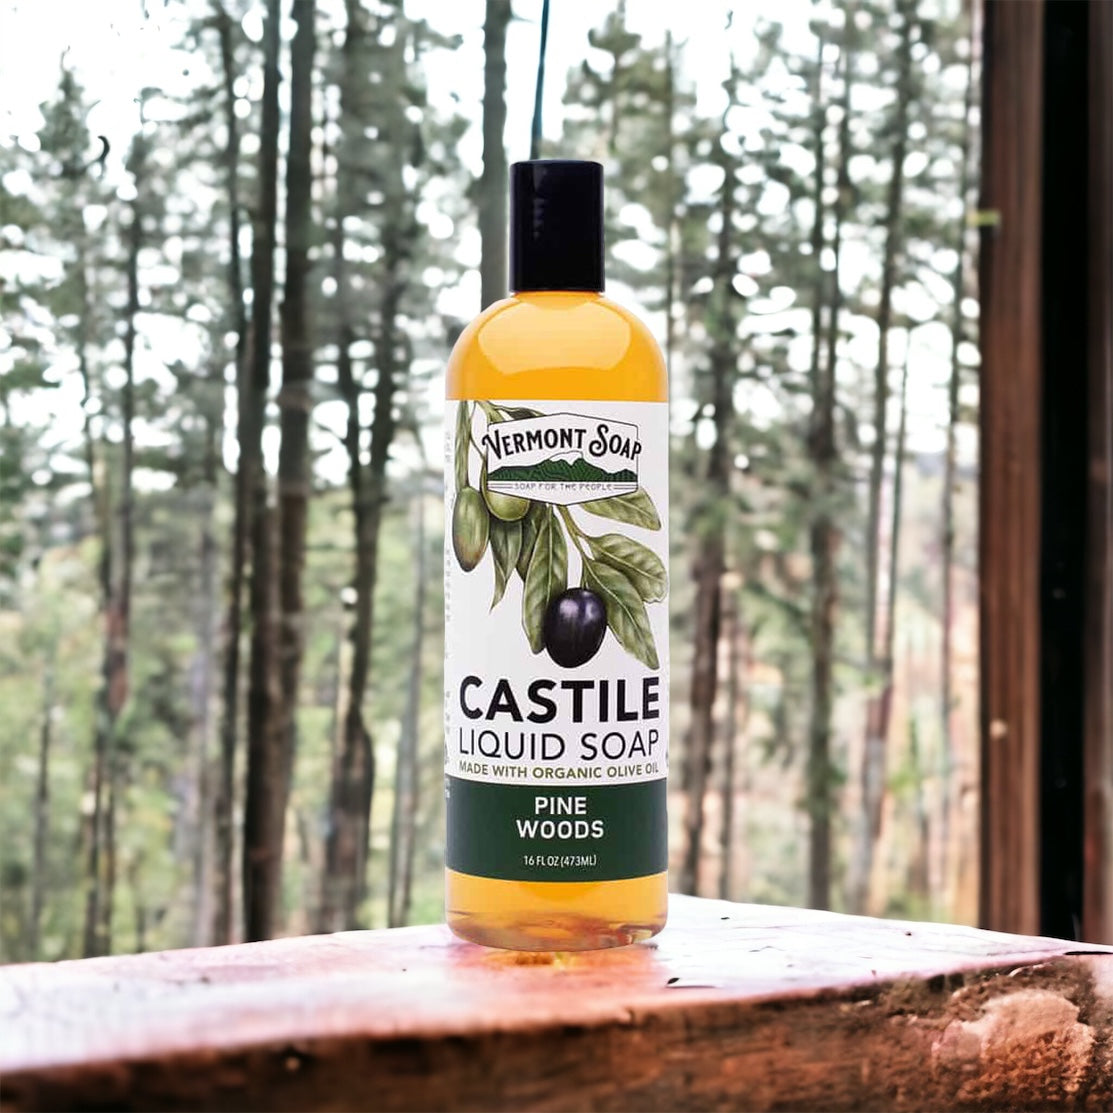 Pine Woods Castile Liquid Soap - Vermont Soap